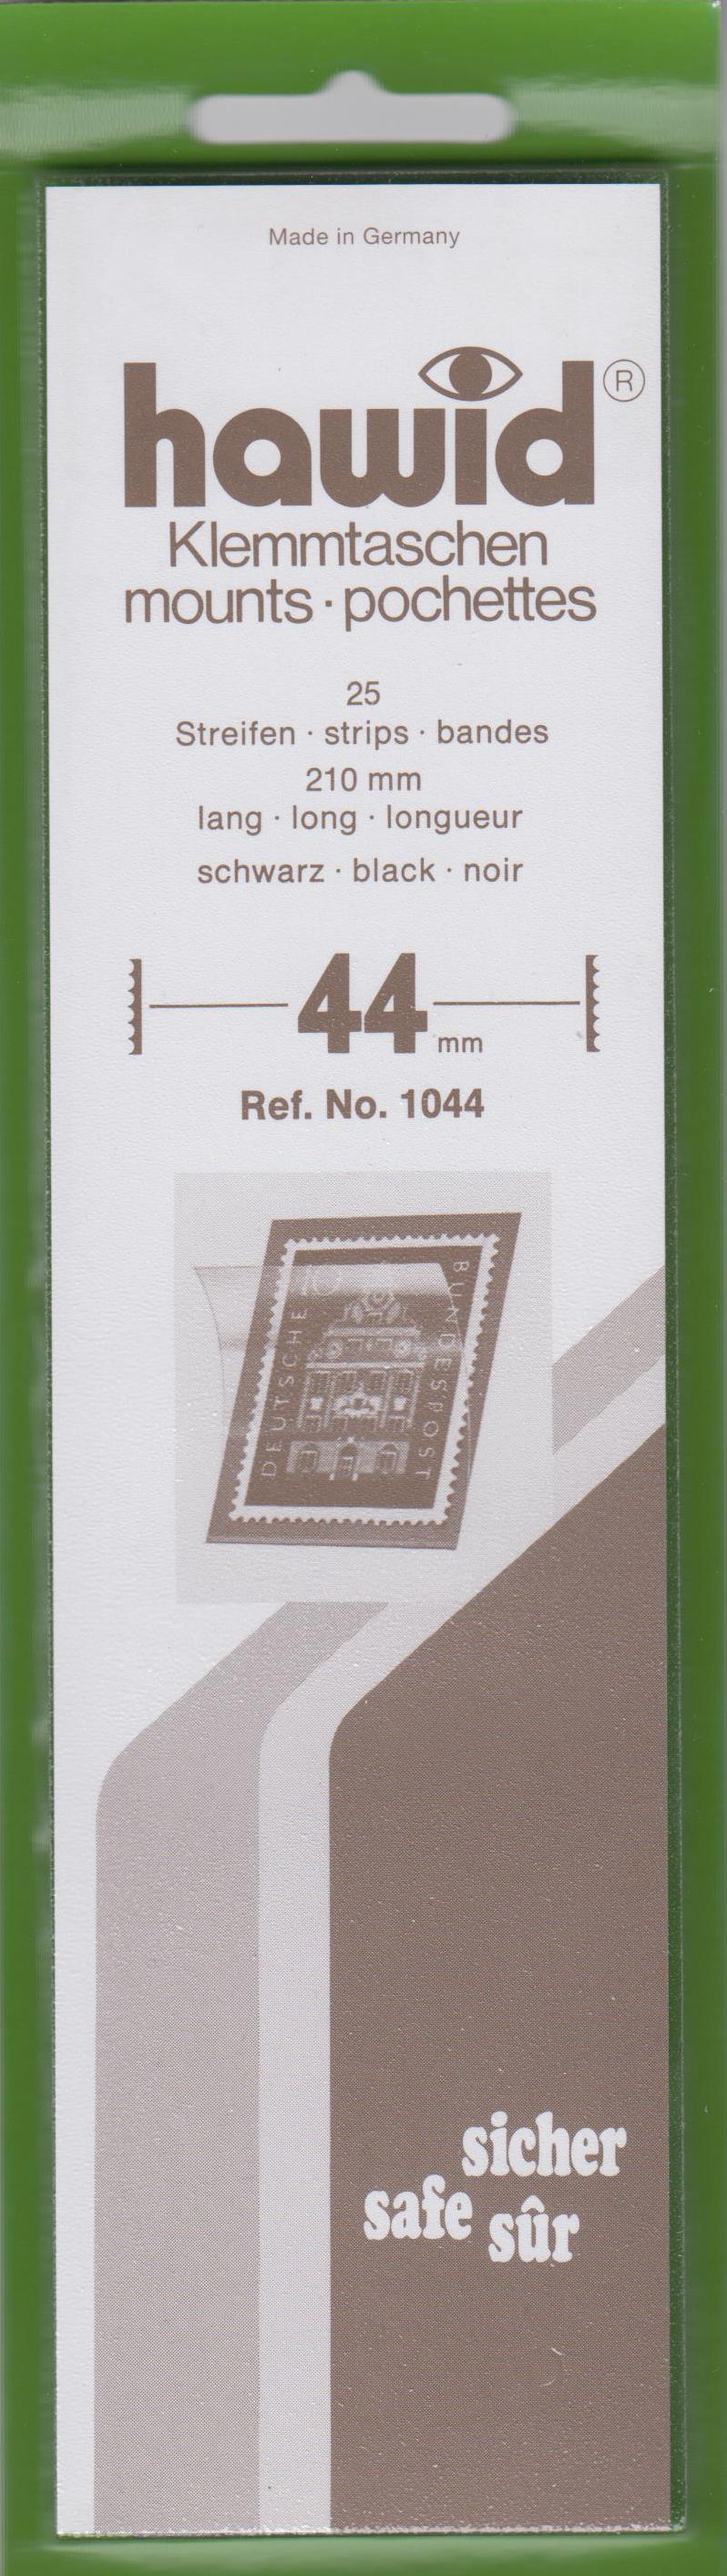 Hawid Klemmtaschen Nr. 1044, 25 Streifen 210mm x 44mm, schwarz